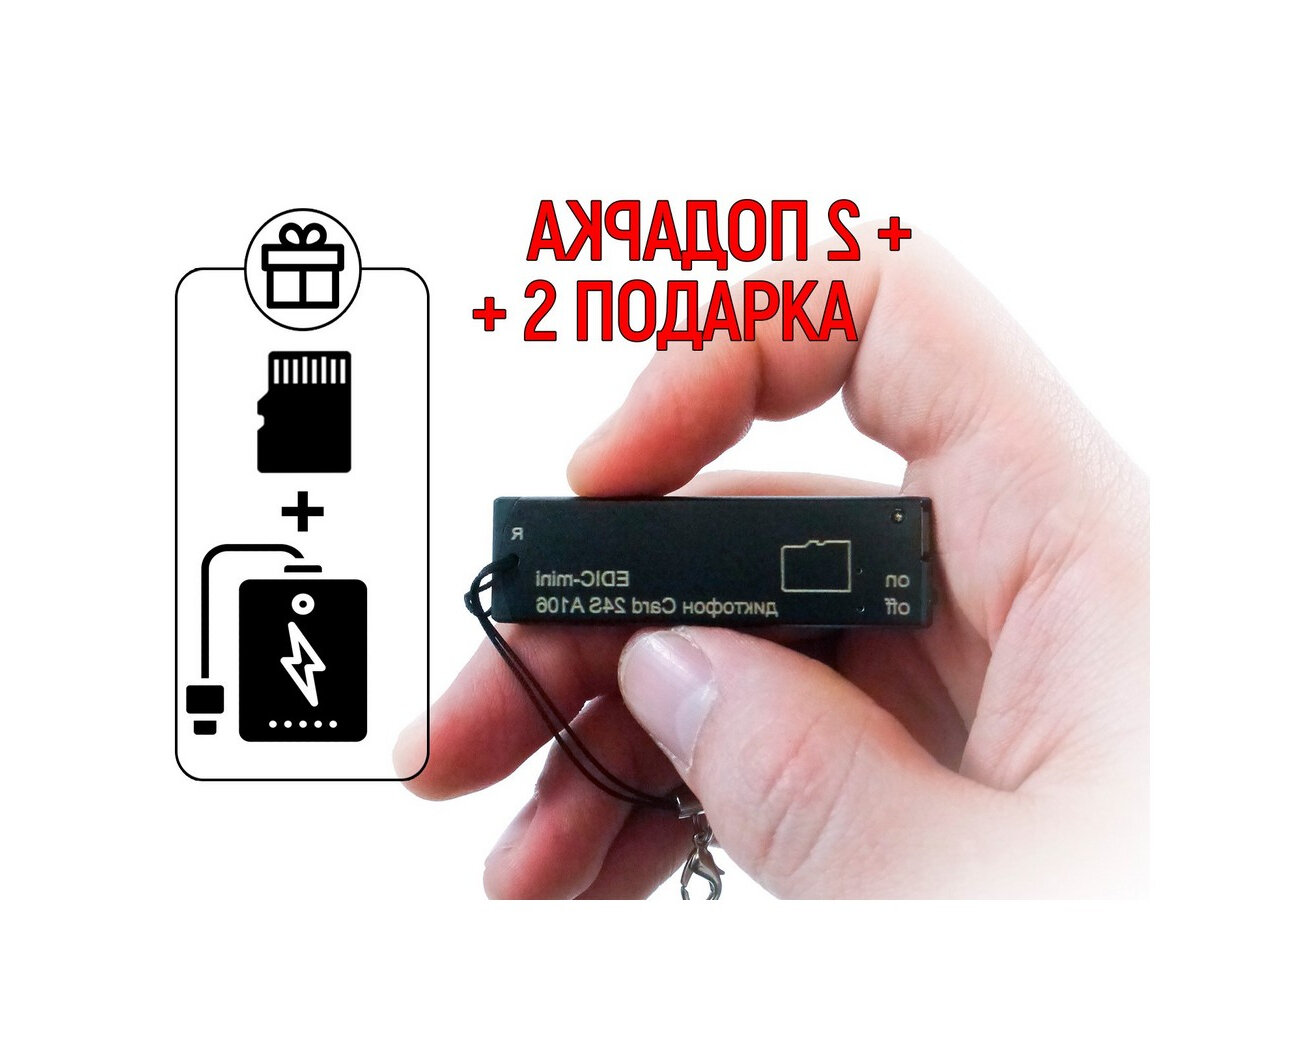 Диктофон с активацией голосом Mini-edic A/106 (SDcard) (F1104EU) + 2 подарка (Power-bank 10000 mAh + SD карта) - запись в стерео режиме (диктофоны дл